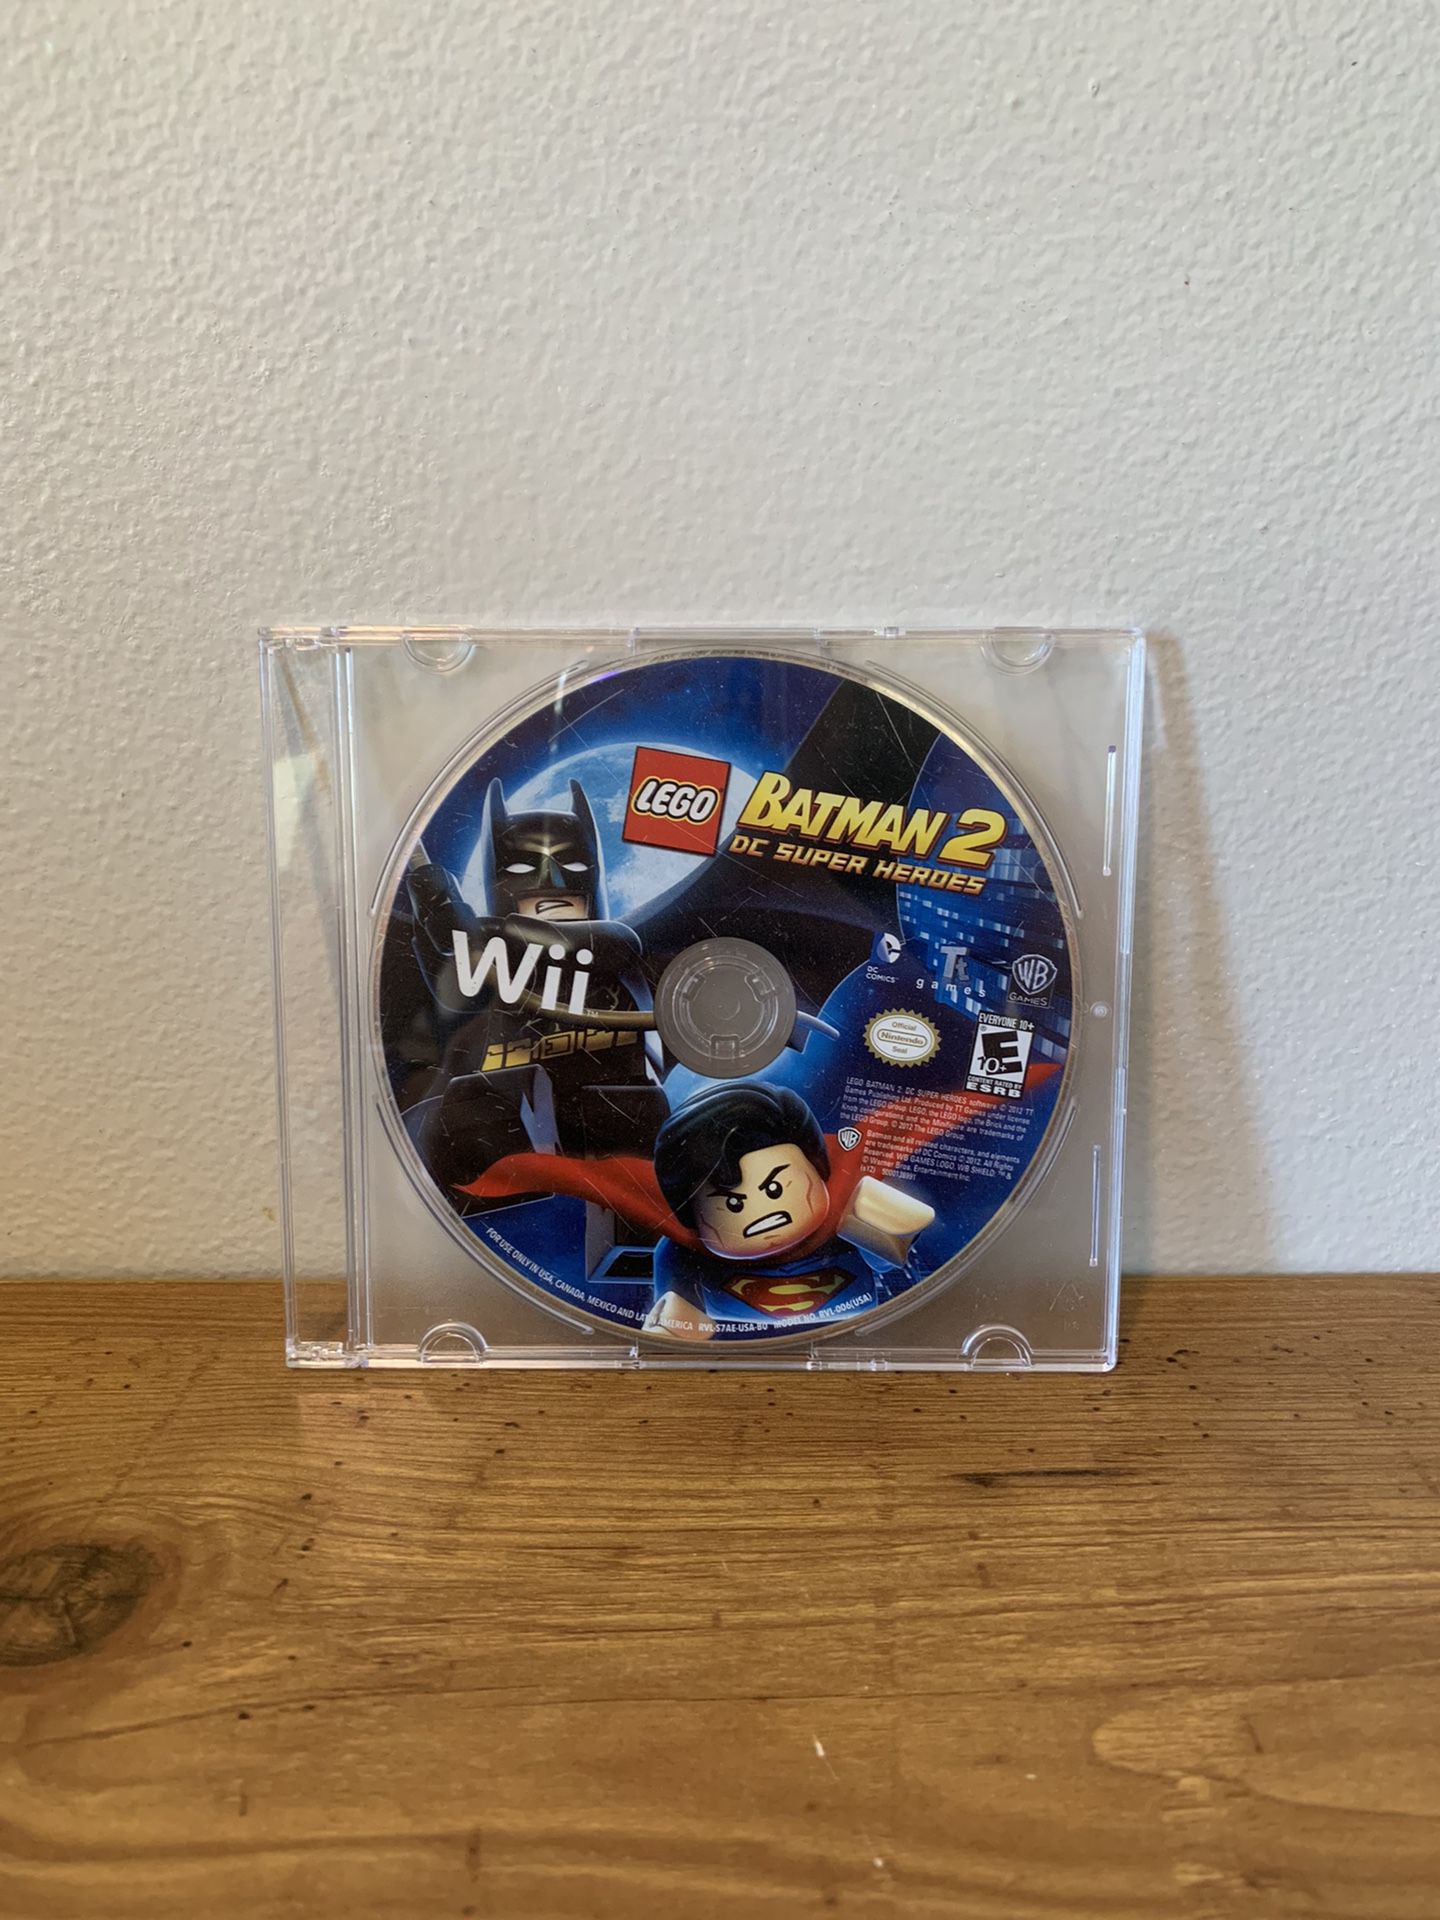 LEGO® BATMAN 2: DC Super Heroes, Wii U games, Games